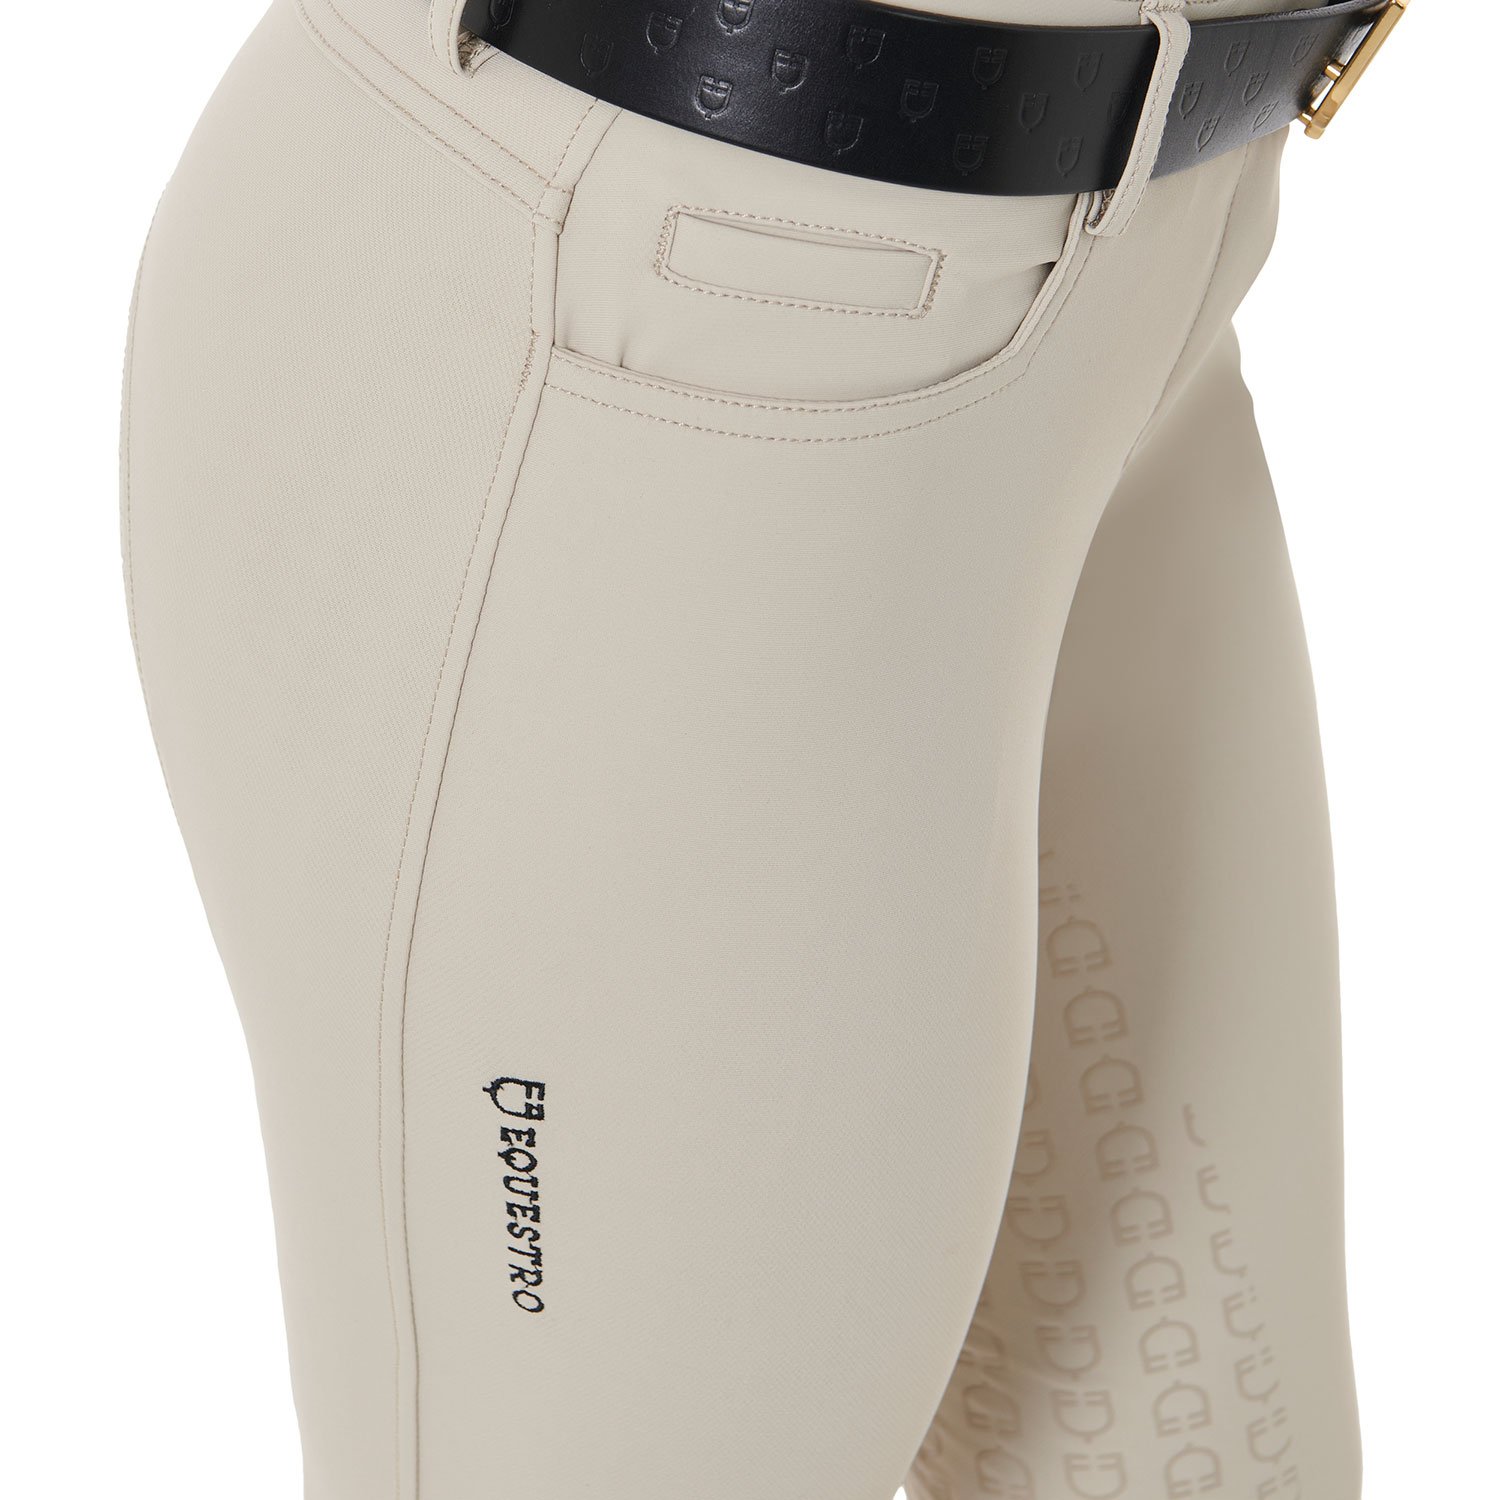 Pantaloni estivi equitazione donna modello Aria slim fit in tessuto tecnico con Full Grip - foto 5